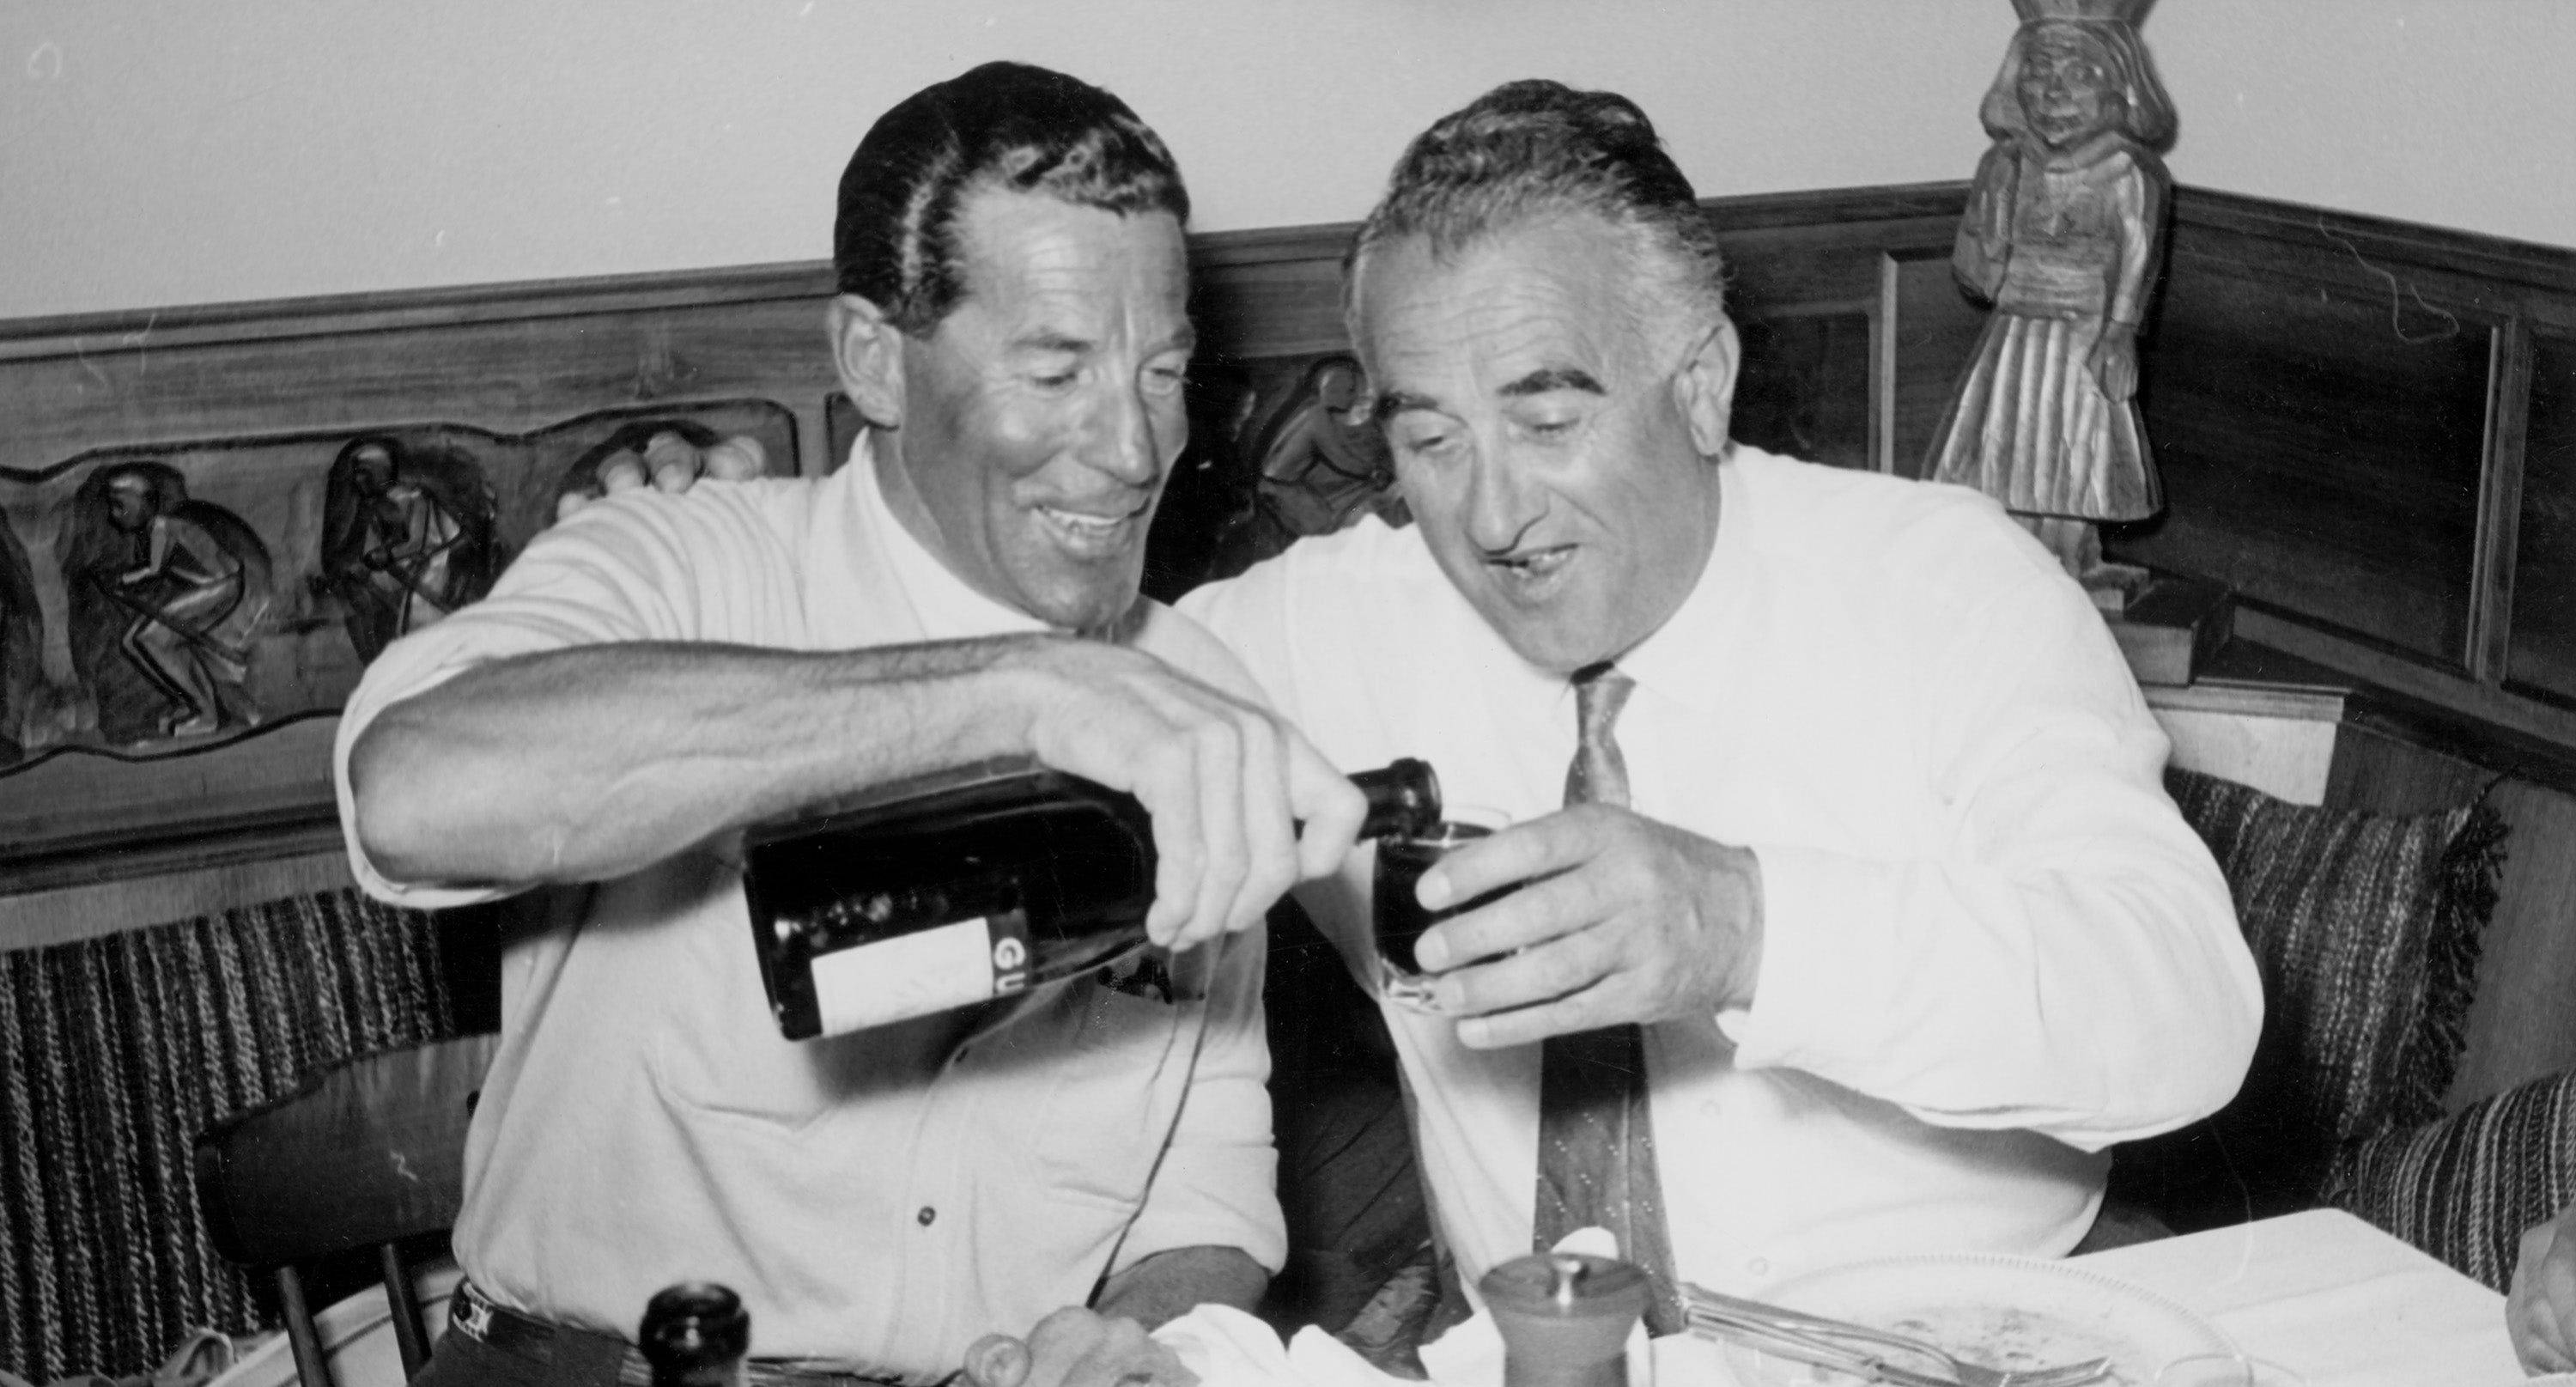 Two gentlemen enjoying wine in Aspen